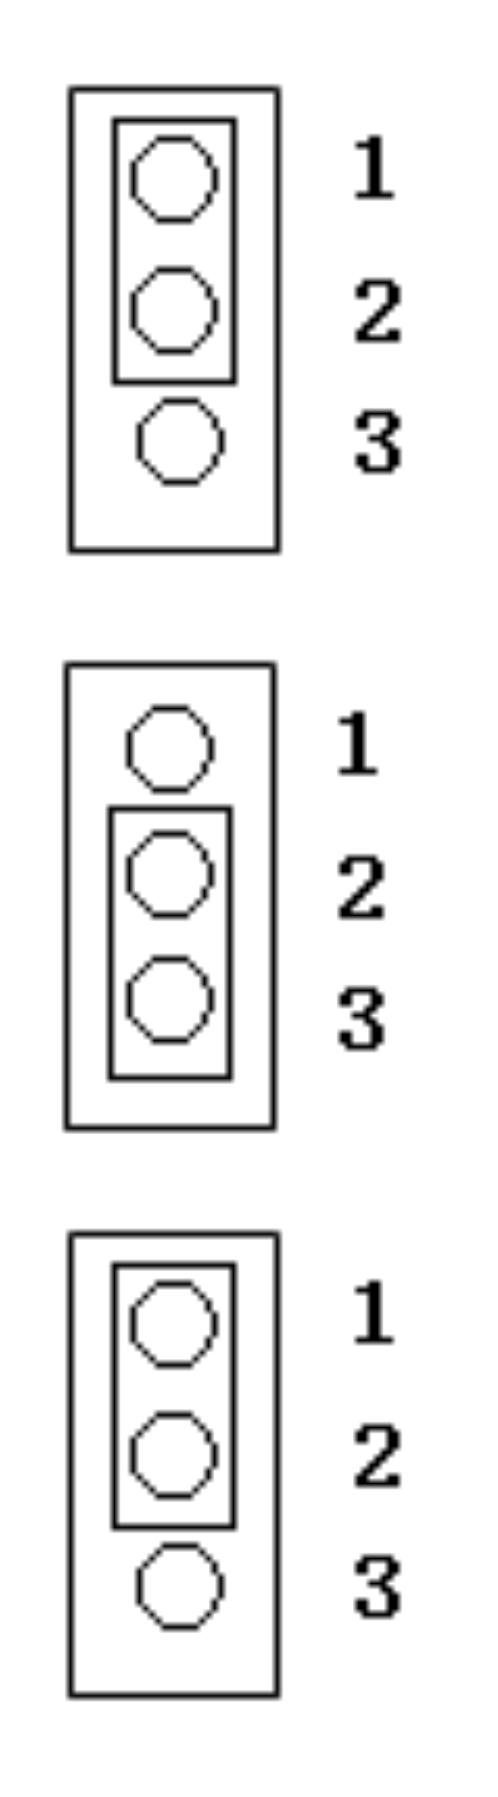 Átkötések alkalmazásának leírása: Jumper (átkötés) Jelölés Funkció Referencia jel